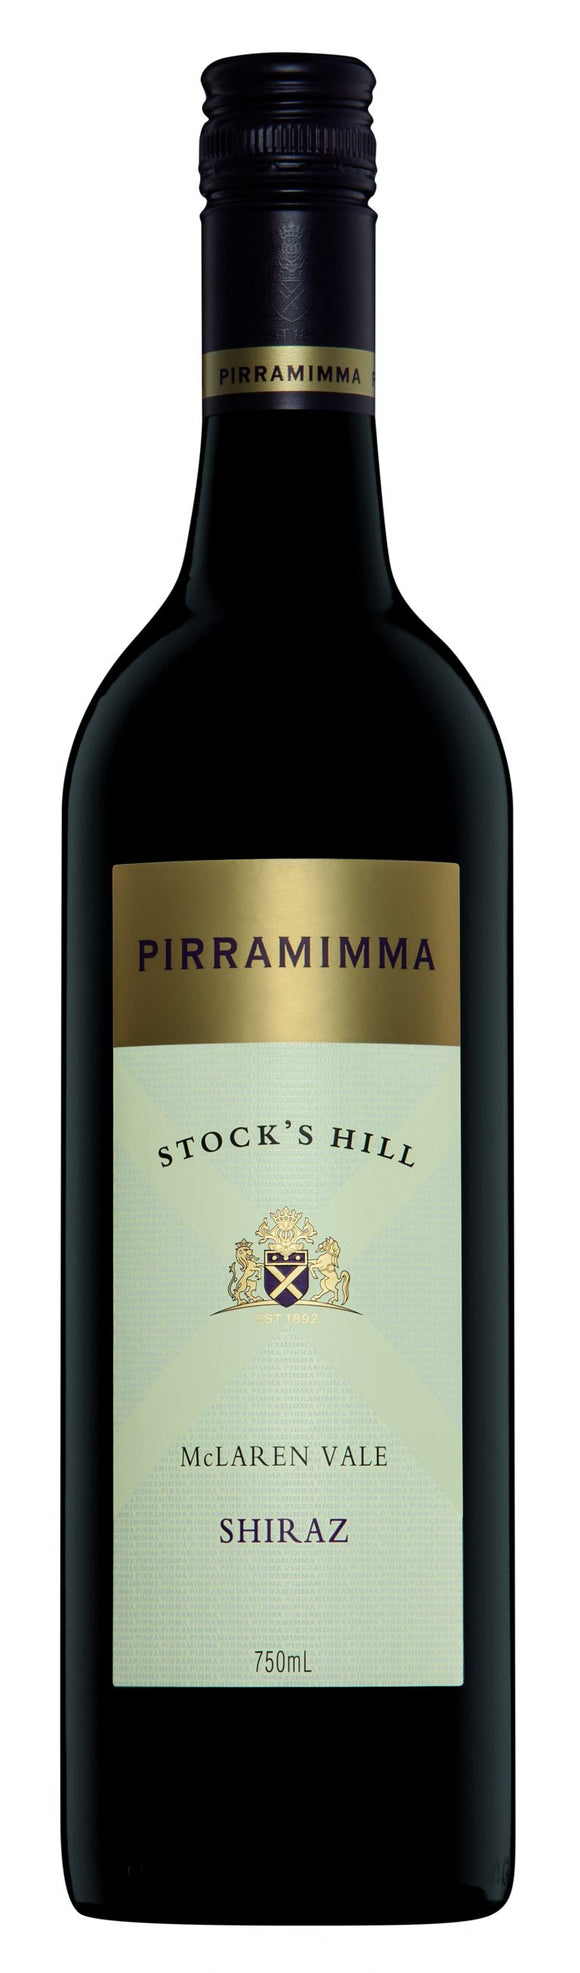 Pirramimma Stock's Hill Shiraz